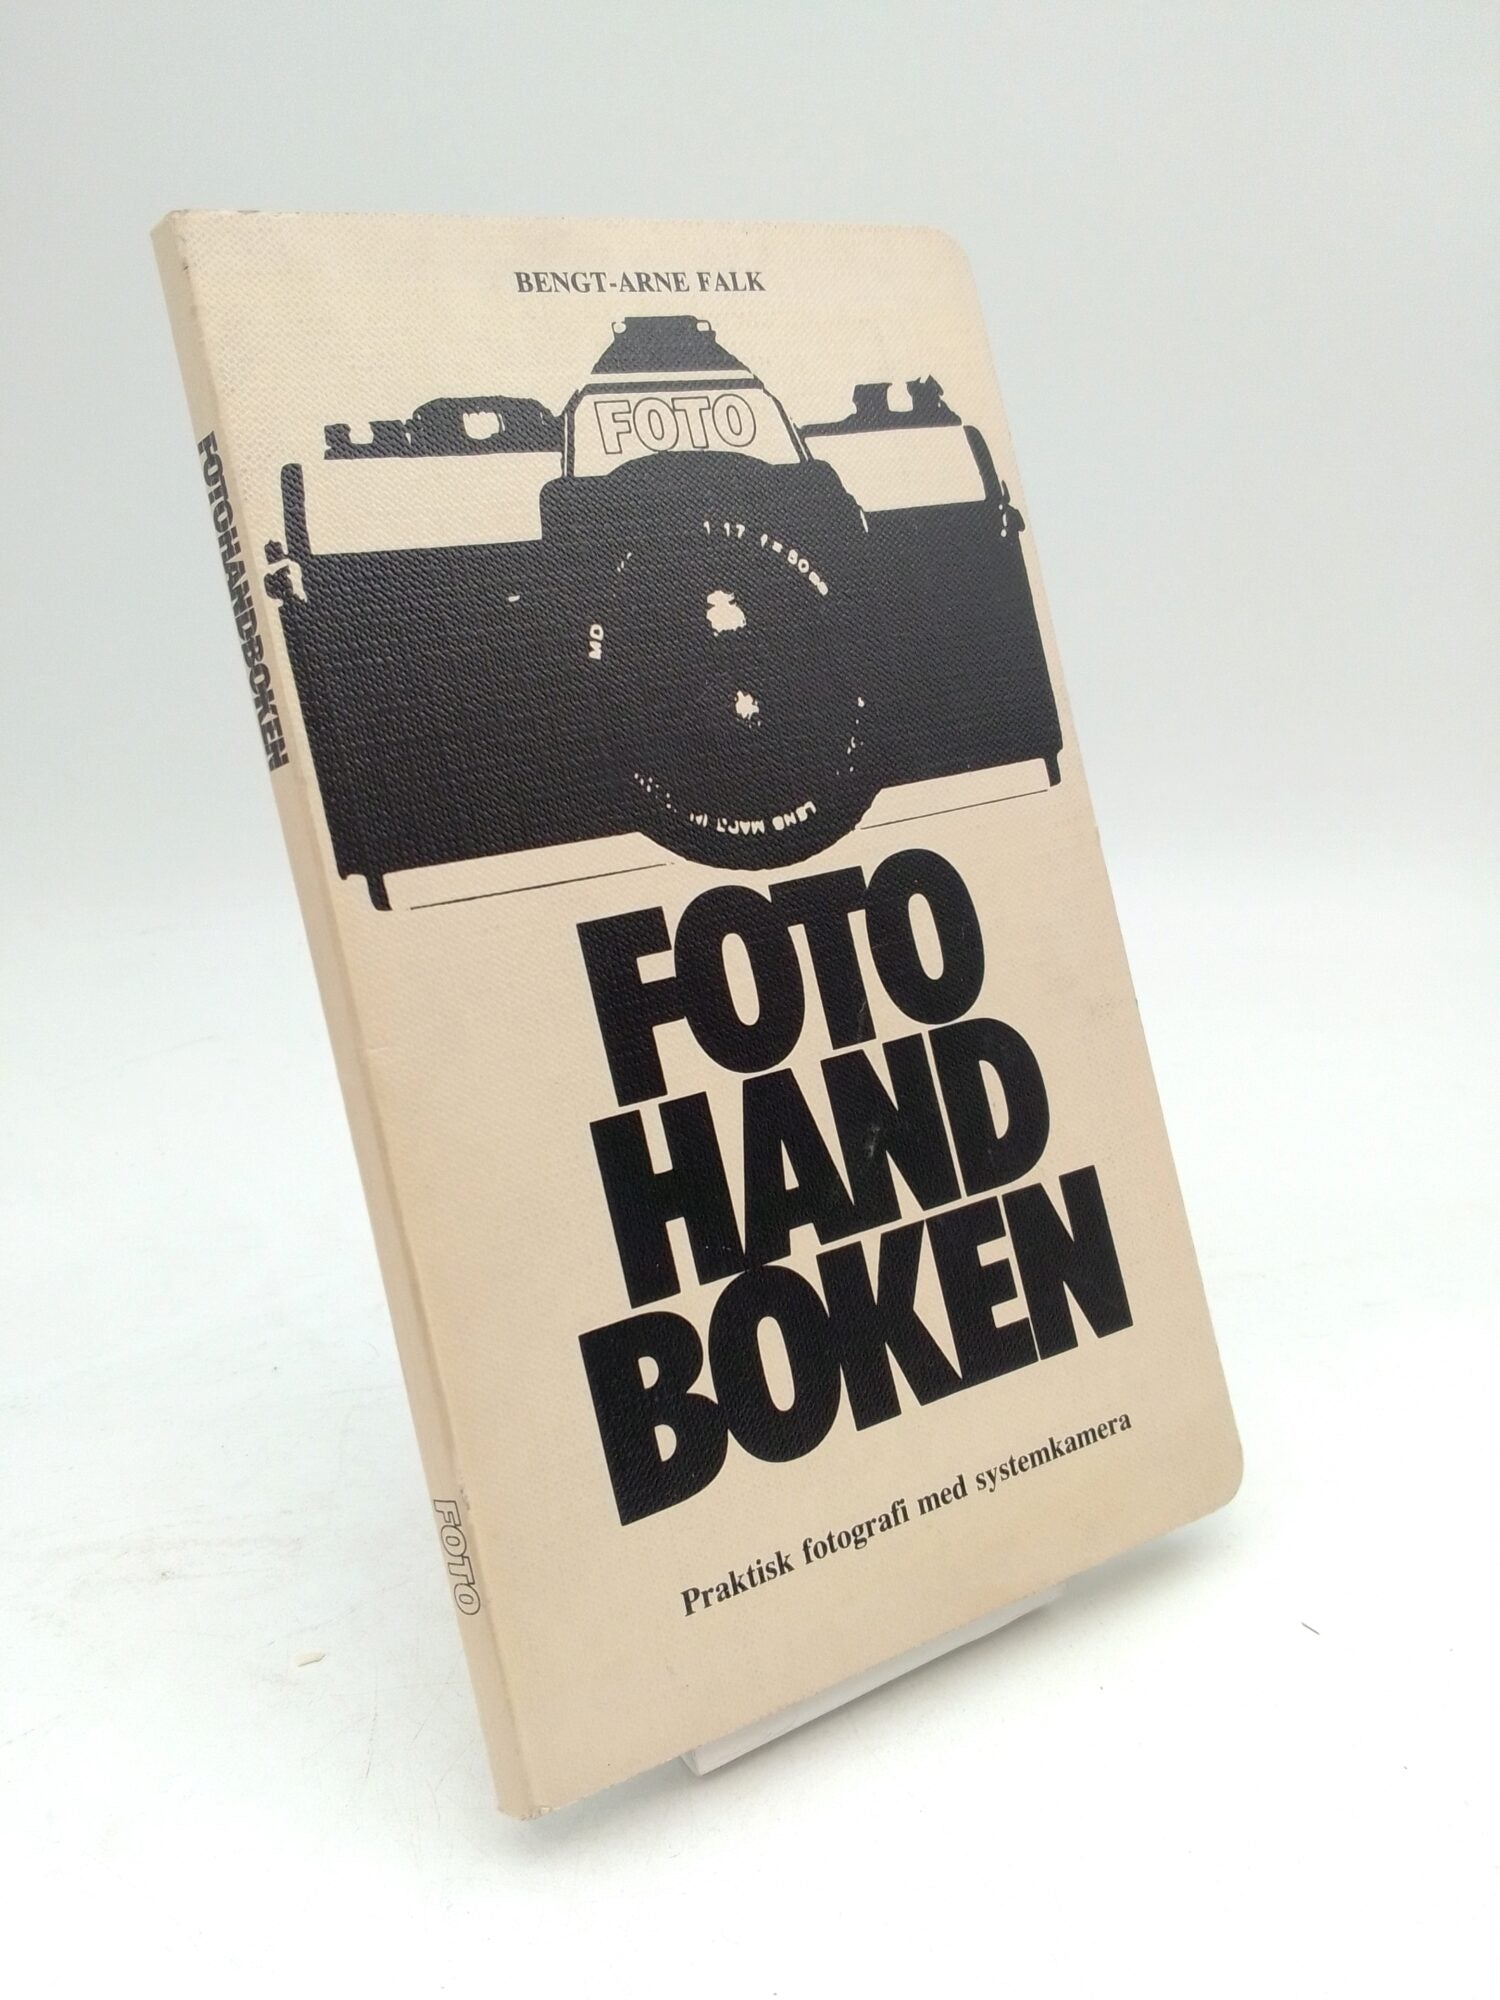 Falk, Bengt-Arne | Fotohandboken : Praktisk fotografi med systemkamera